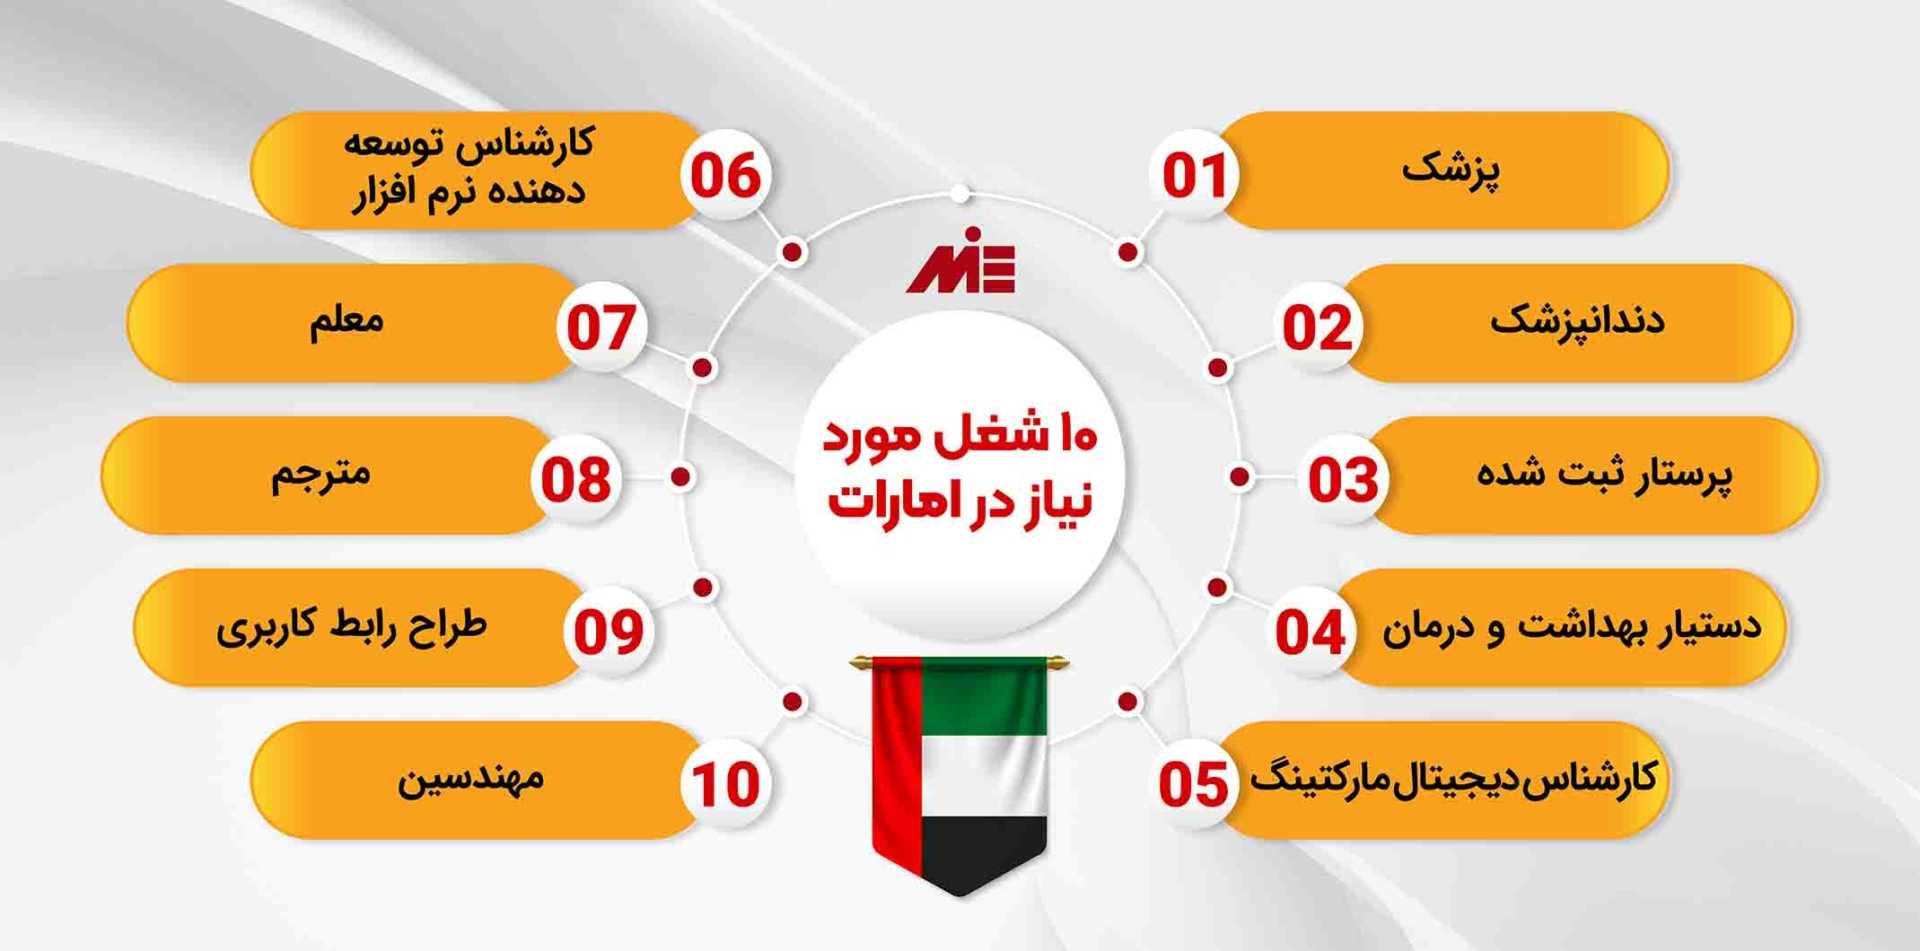 لیست مشاغل مورد نیاز در امارات و دبی 